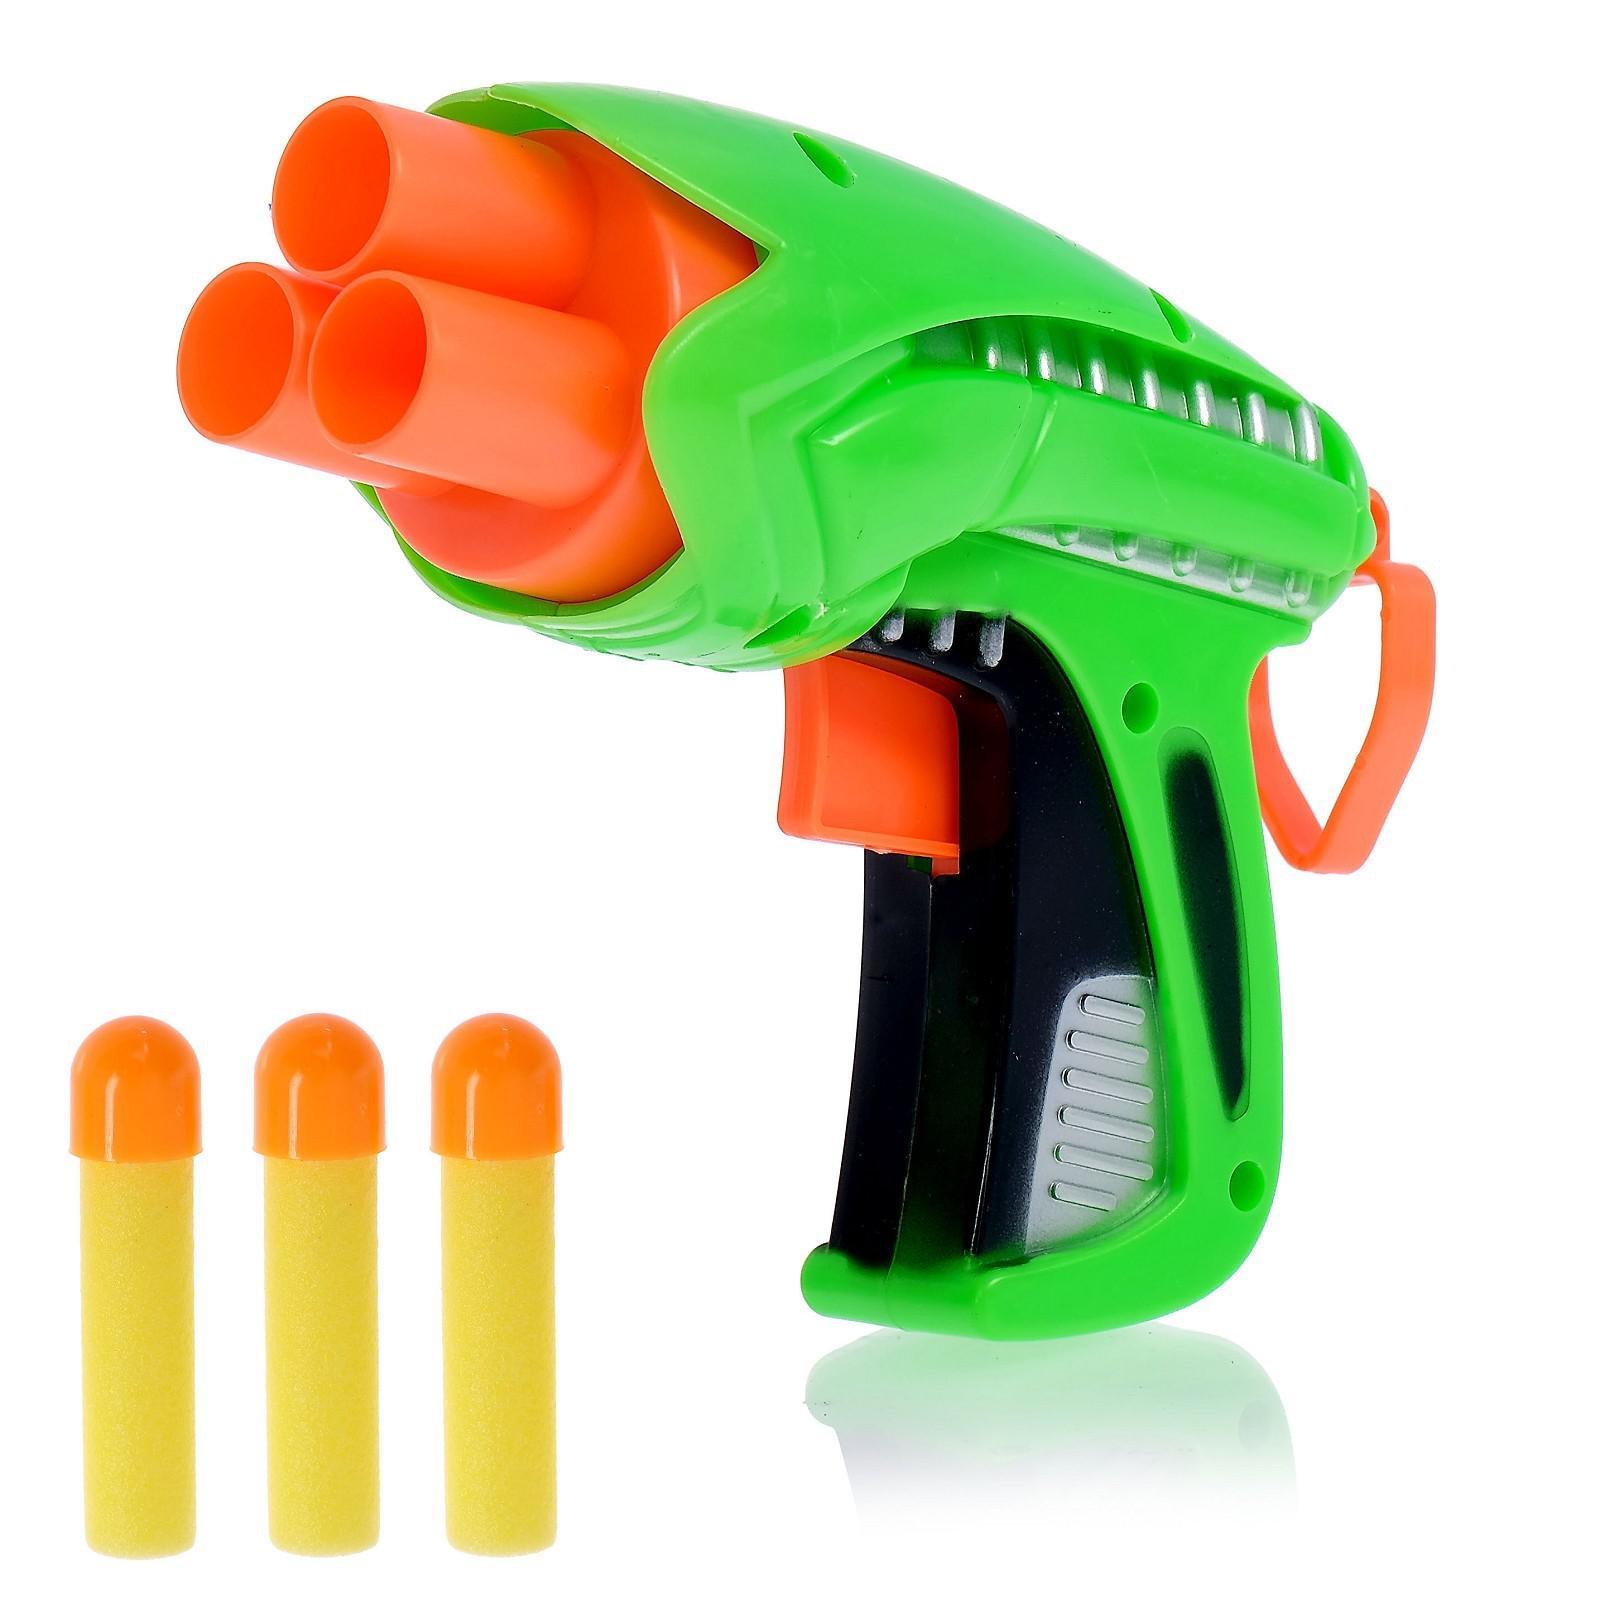 Пистолет игрушечный Защитник стреляет мягкими пулями в ассортименте 409899